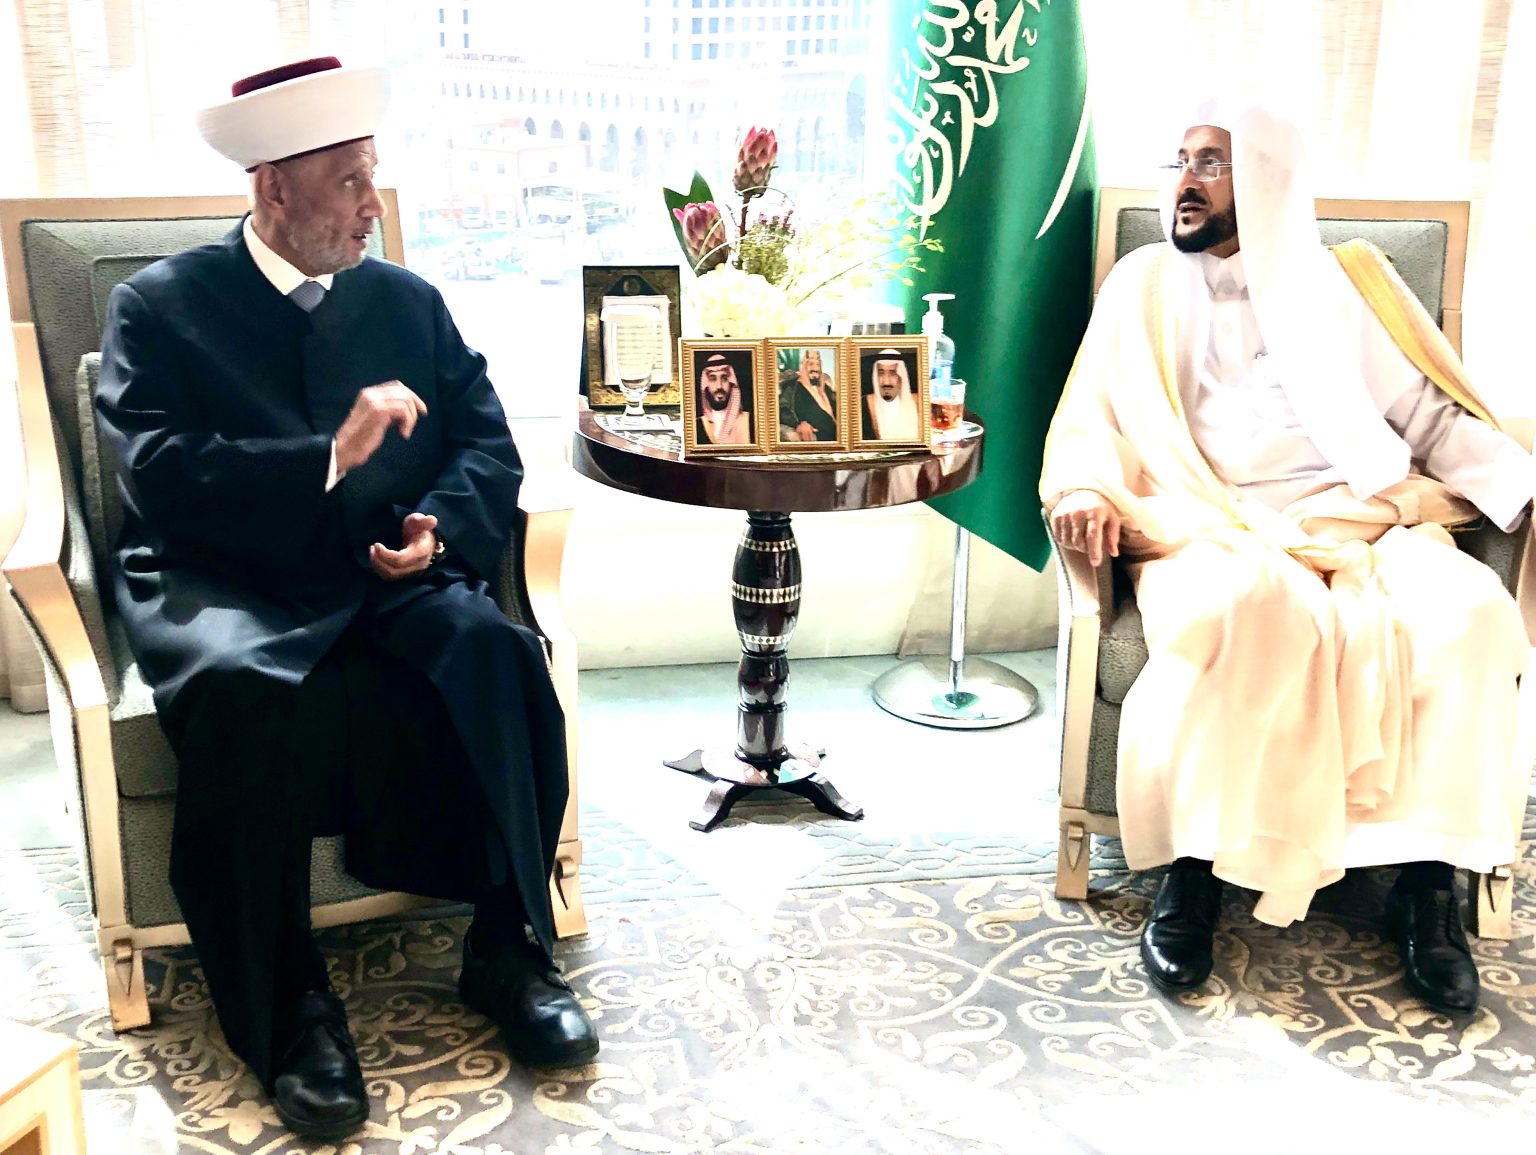 سماحة المفتي يلتقي وزير الشؤون الإسلامية والدعوة والإرشاد في المملكة العربية السعودية الدكتور عبد اللطيف بن عبد العزيز ال الشيخ